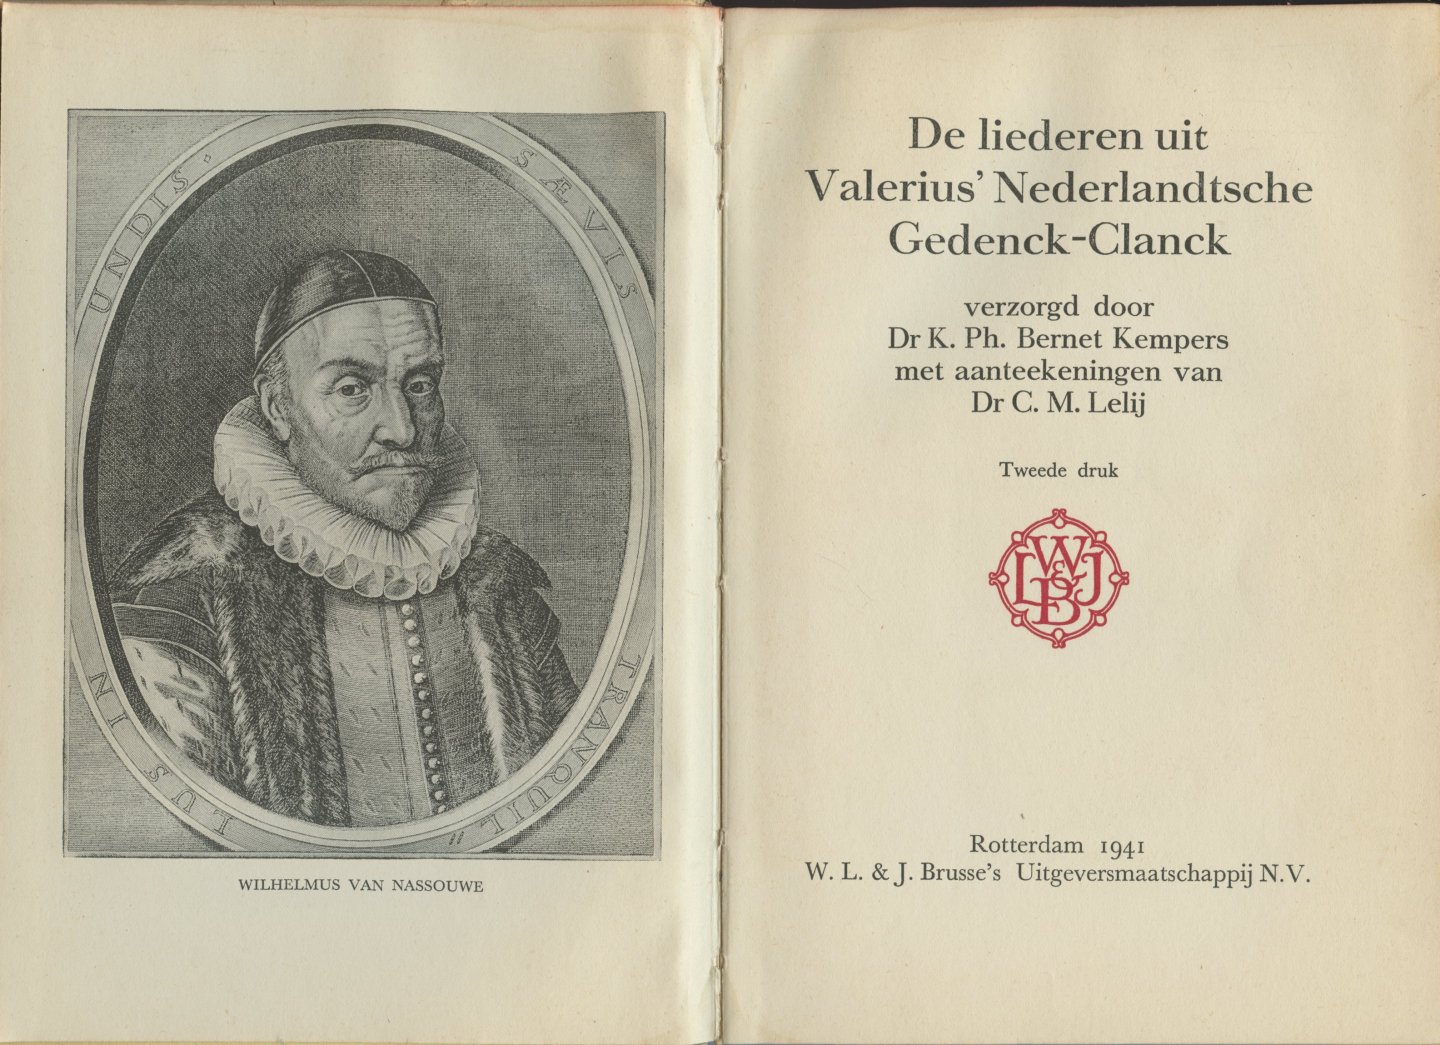 Kempers, K. Ph. Bernet (met aanteekeningen van C.M. Lelij) - De liederen uit Valerius' Nederlandtsche Gedenck-Clanck